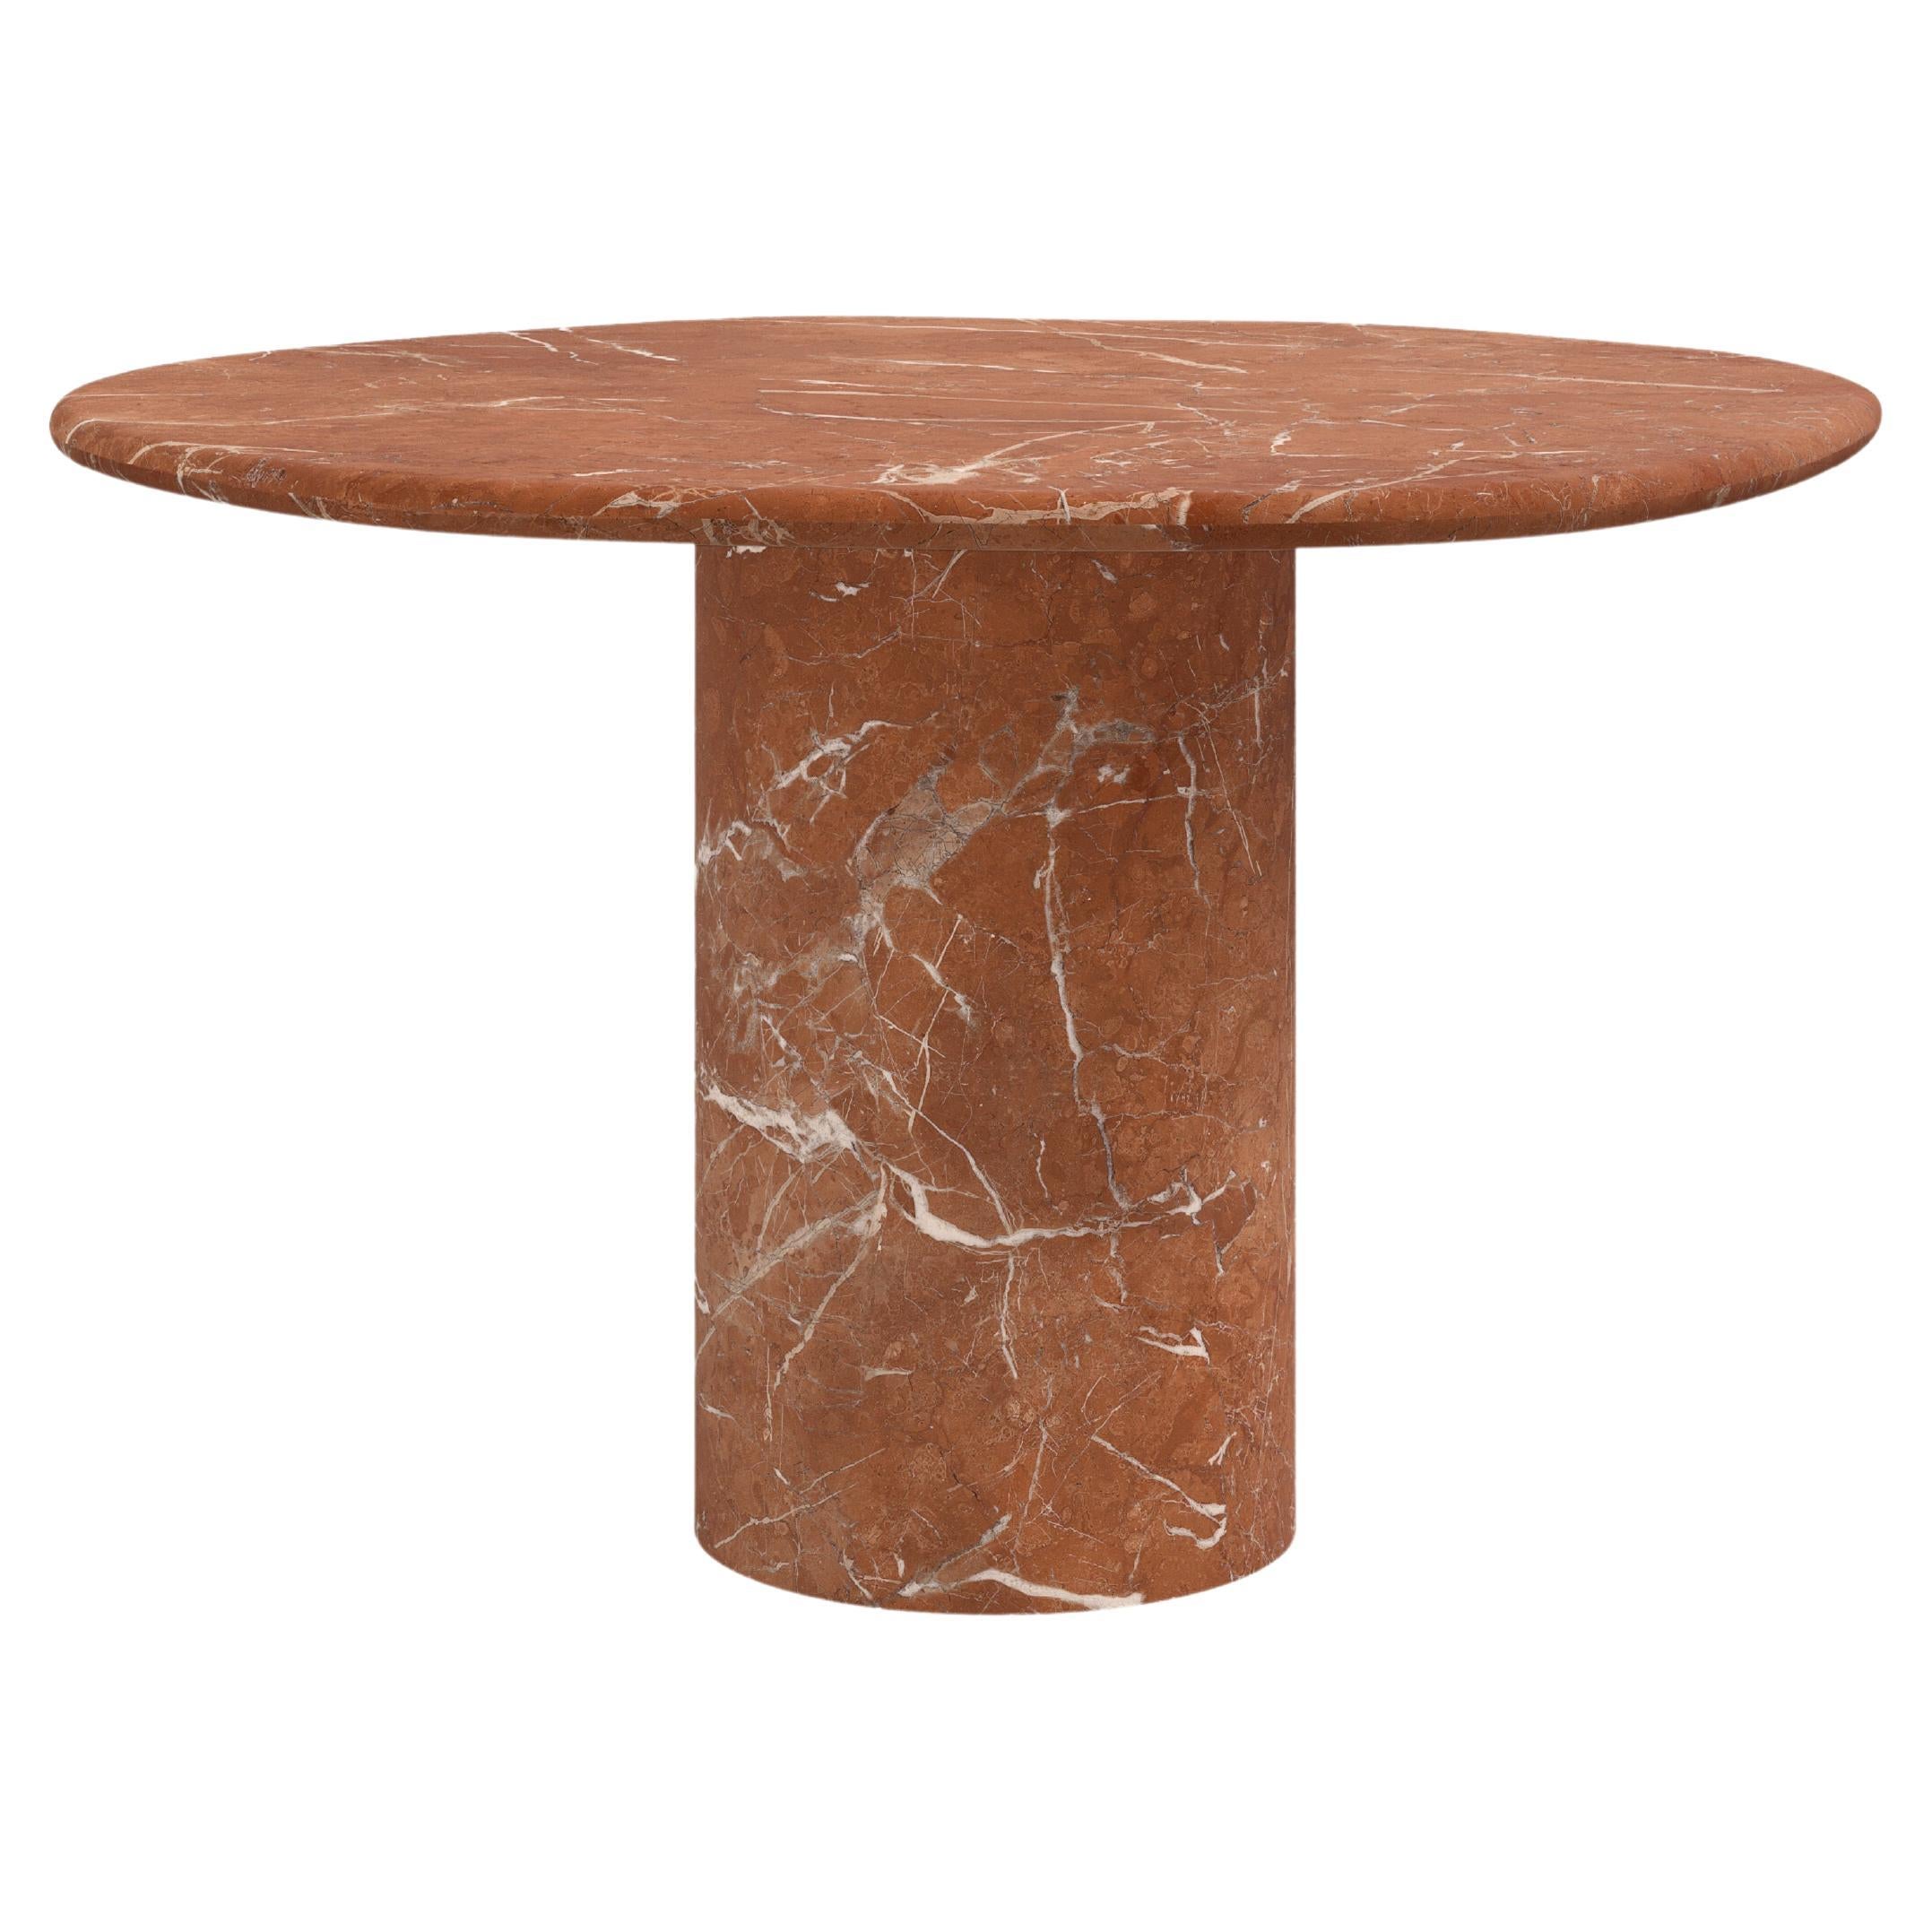 FORM(LA) Lago Round Dining Table 42”L x 42”W x 30”H Rojo Alicante Marble For Sale